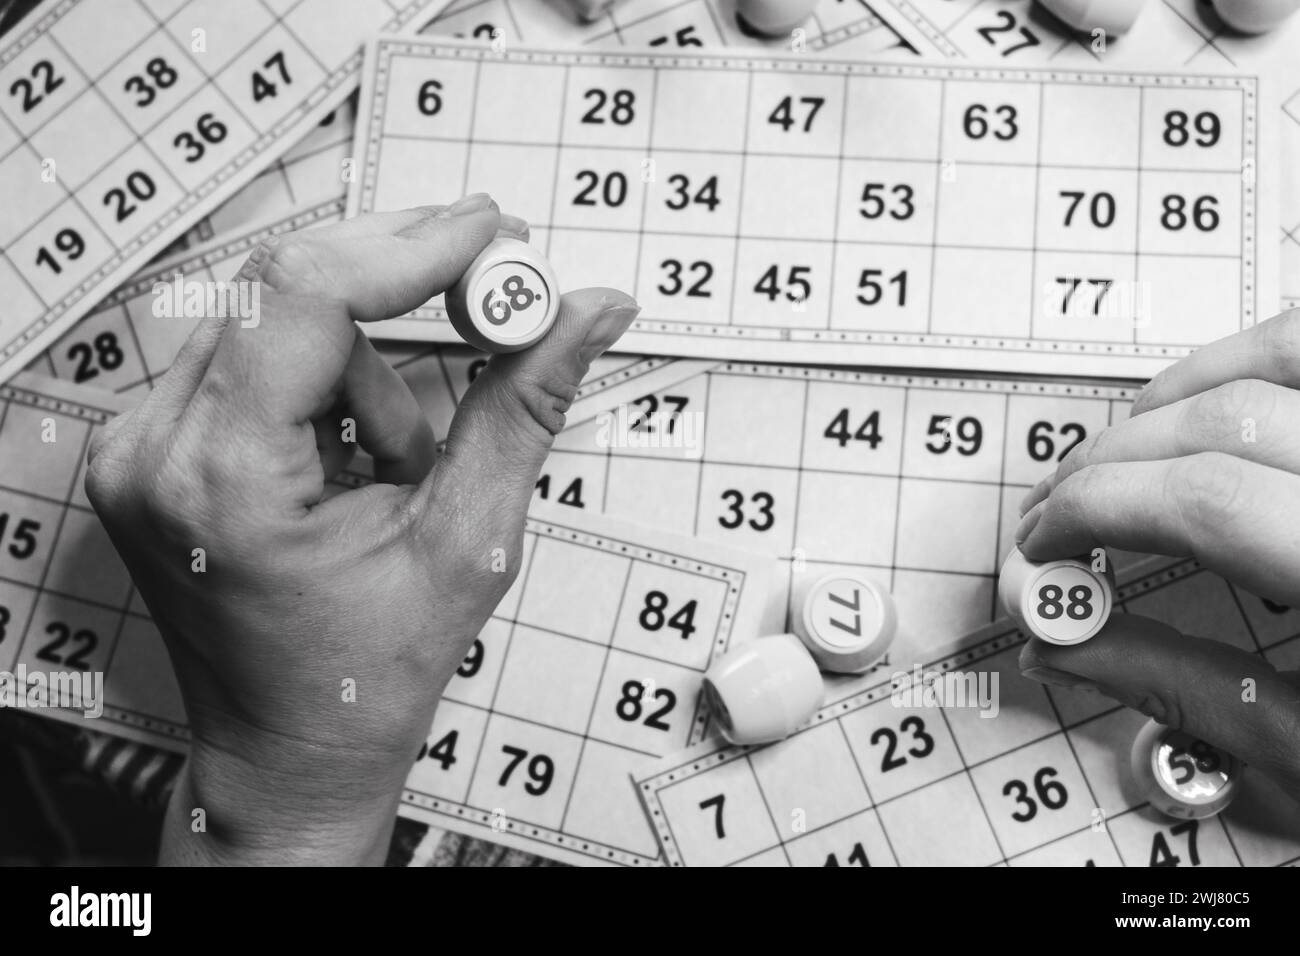 Giocare a lotto, bianco e nero. Persona che tiene un cubo con il personaggio sullo sfondo della scheda bingo, monocromatica. Stile di vita nostalgico. Giochi da tavolo. Foto Stock